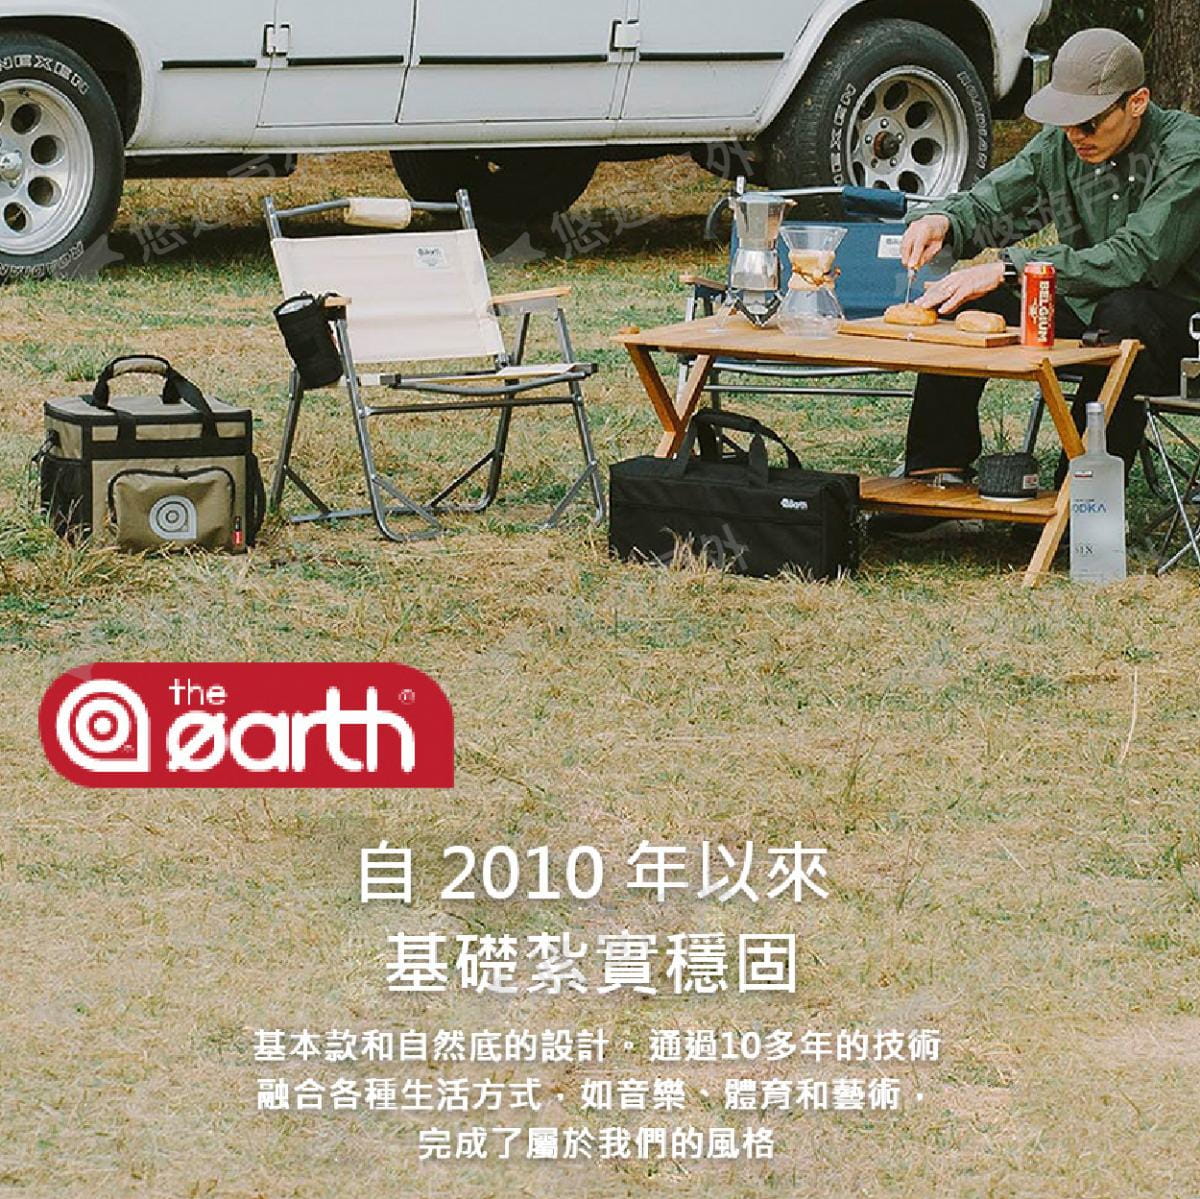 【the earth】高山瓦斯罐保護套_450G (悠遊戶外) 5